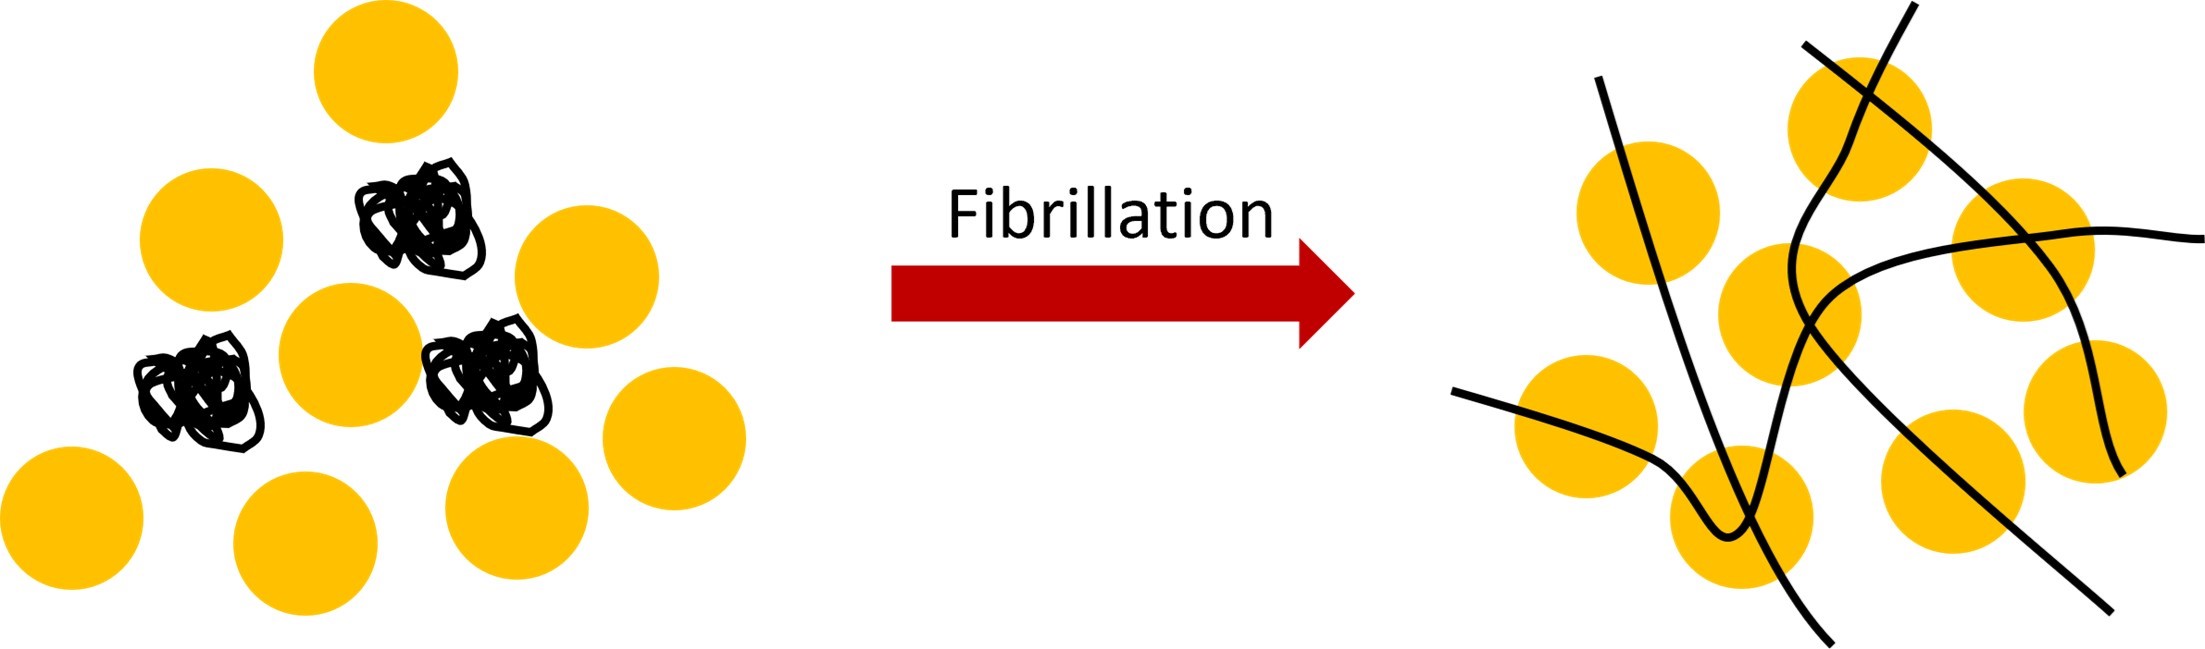 sketch of the fibrillation principle